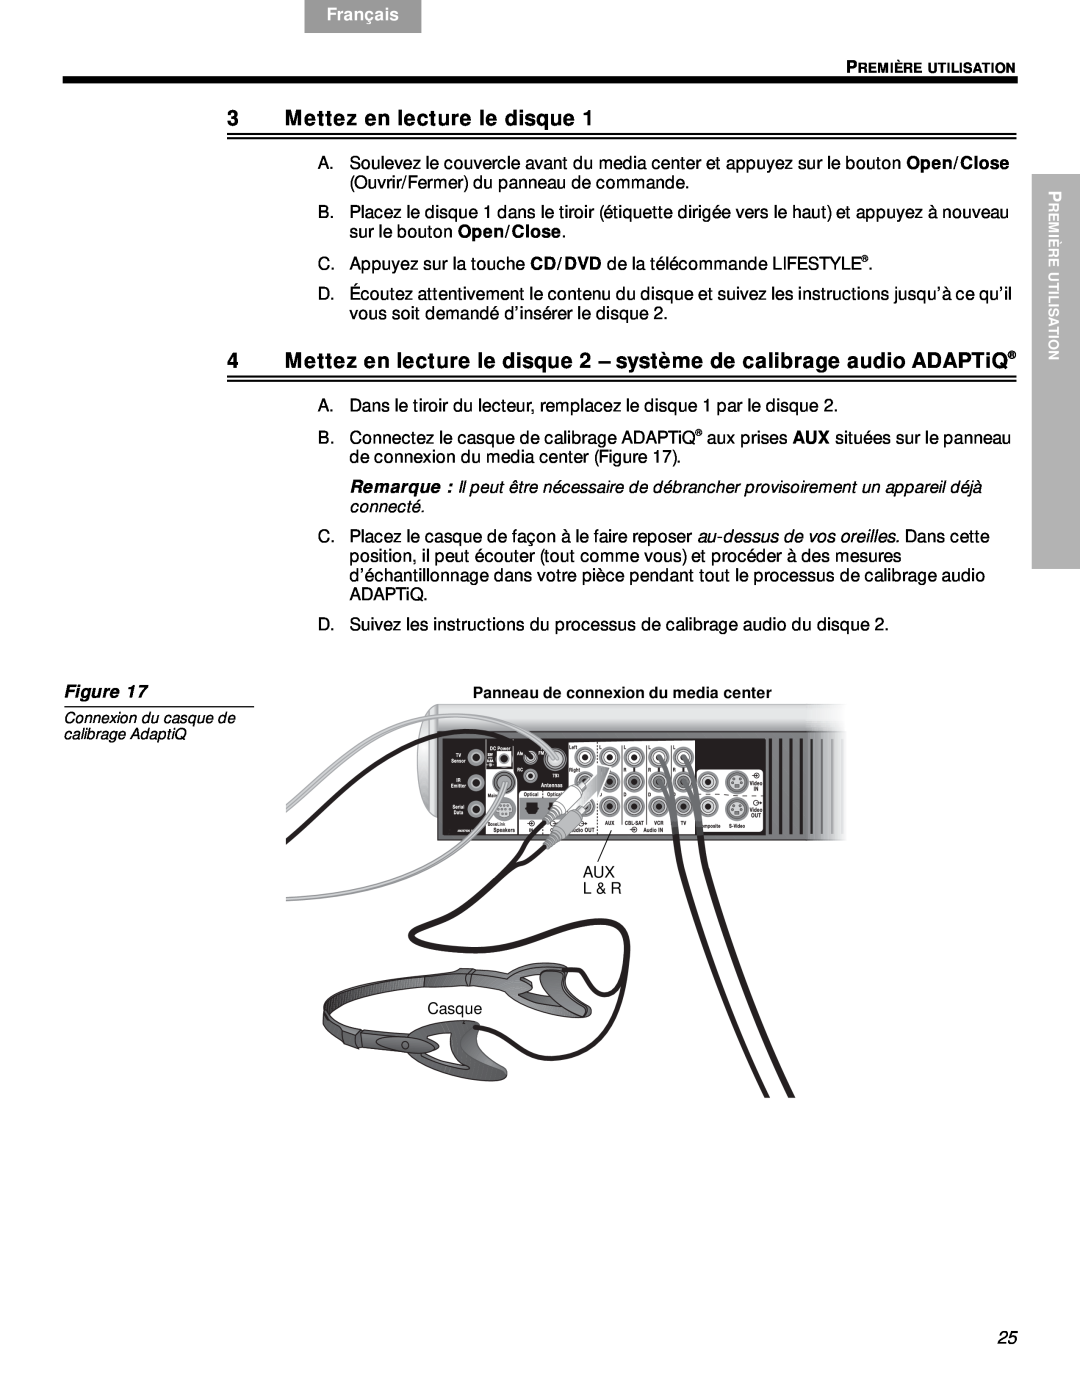 Bose VS-2 manual 3Mettez en lecture le disque, English, Español, Français, Nederlands, Svenska, Figure 